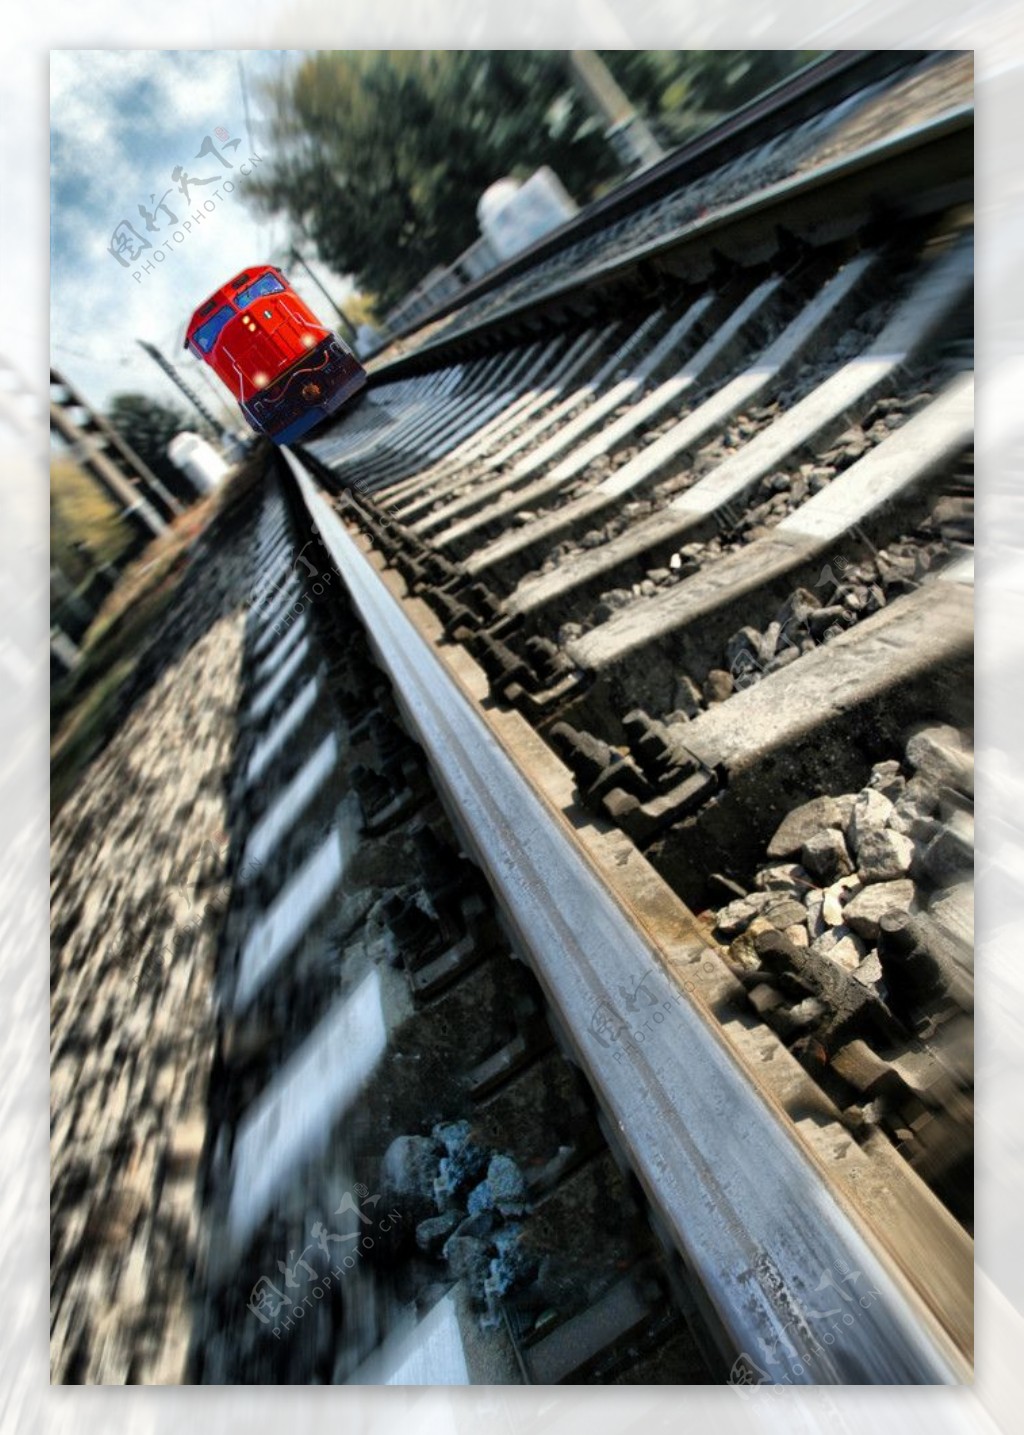 屌丝偶遇火车头 - 照片 - Chiphell - 分享与交流用户体验